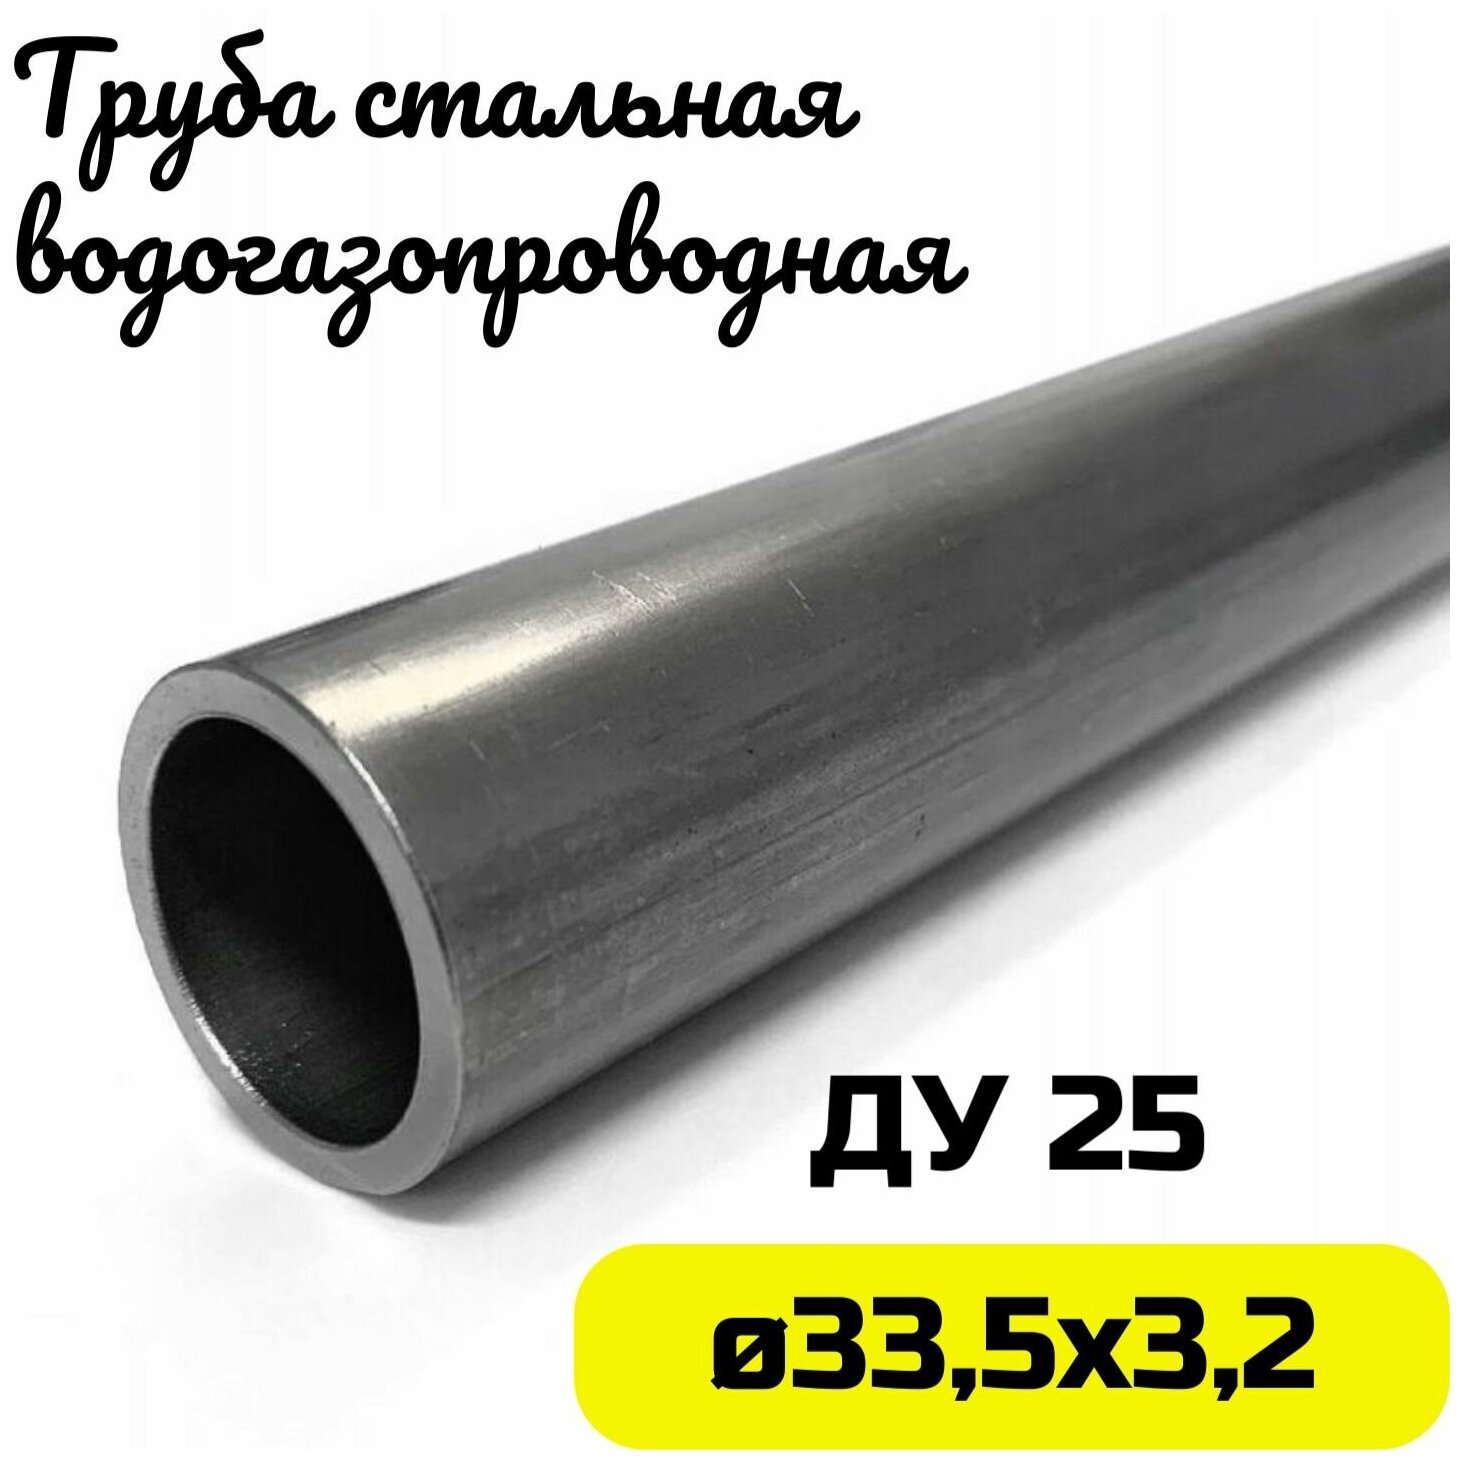 Труба металлическая 33х3,2мм круглая стальная ДУ25